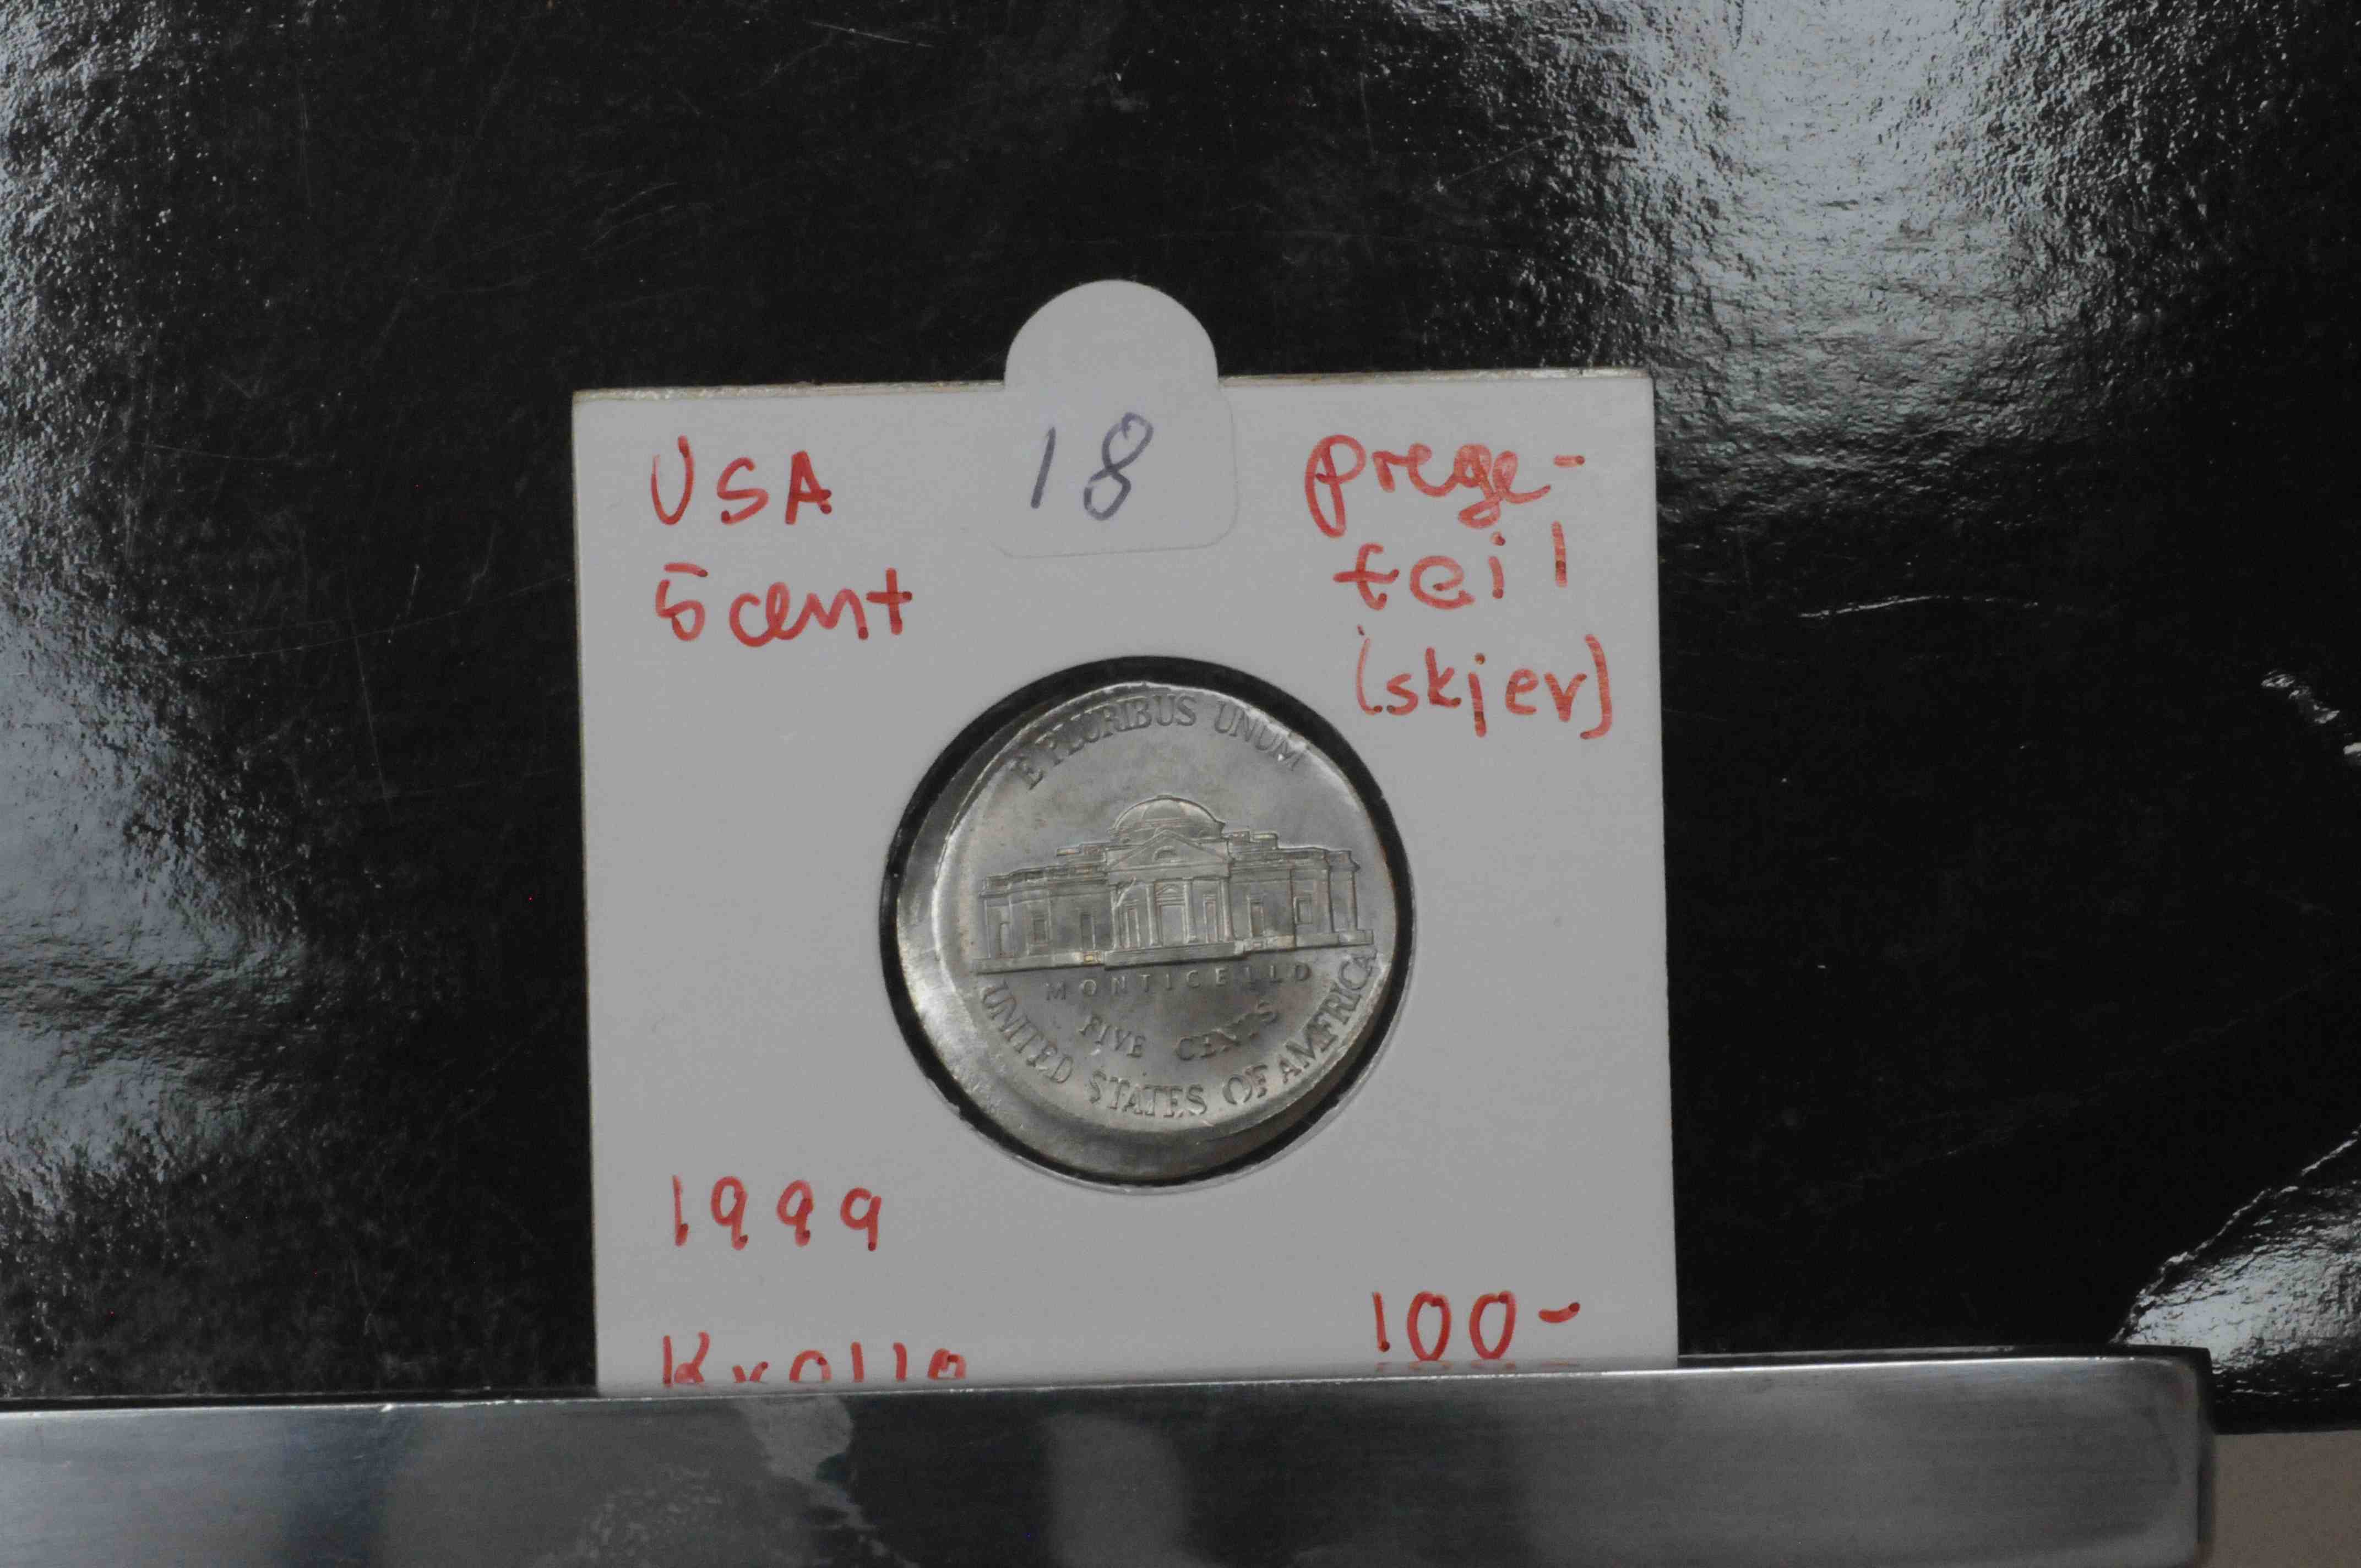 USA 5 cent pregefeil(skjev) 1999 kv0/01